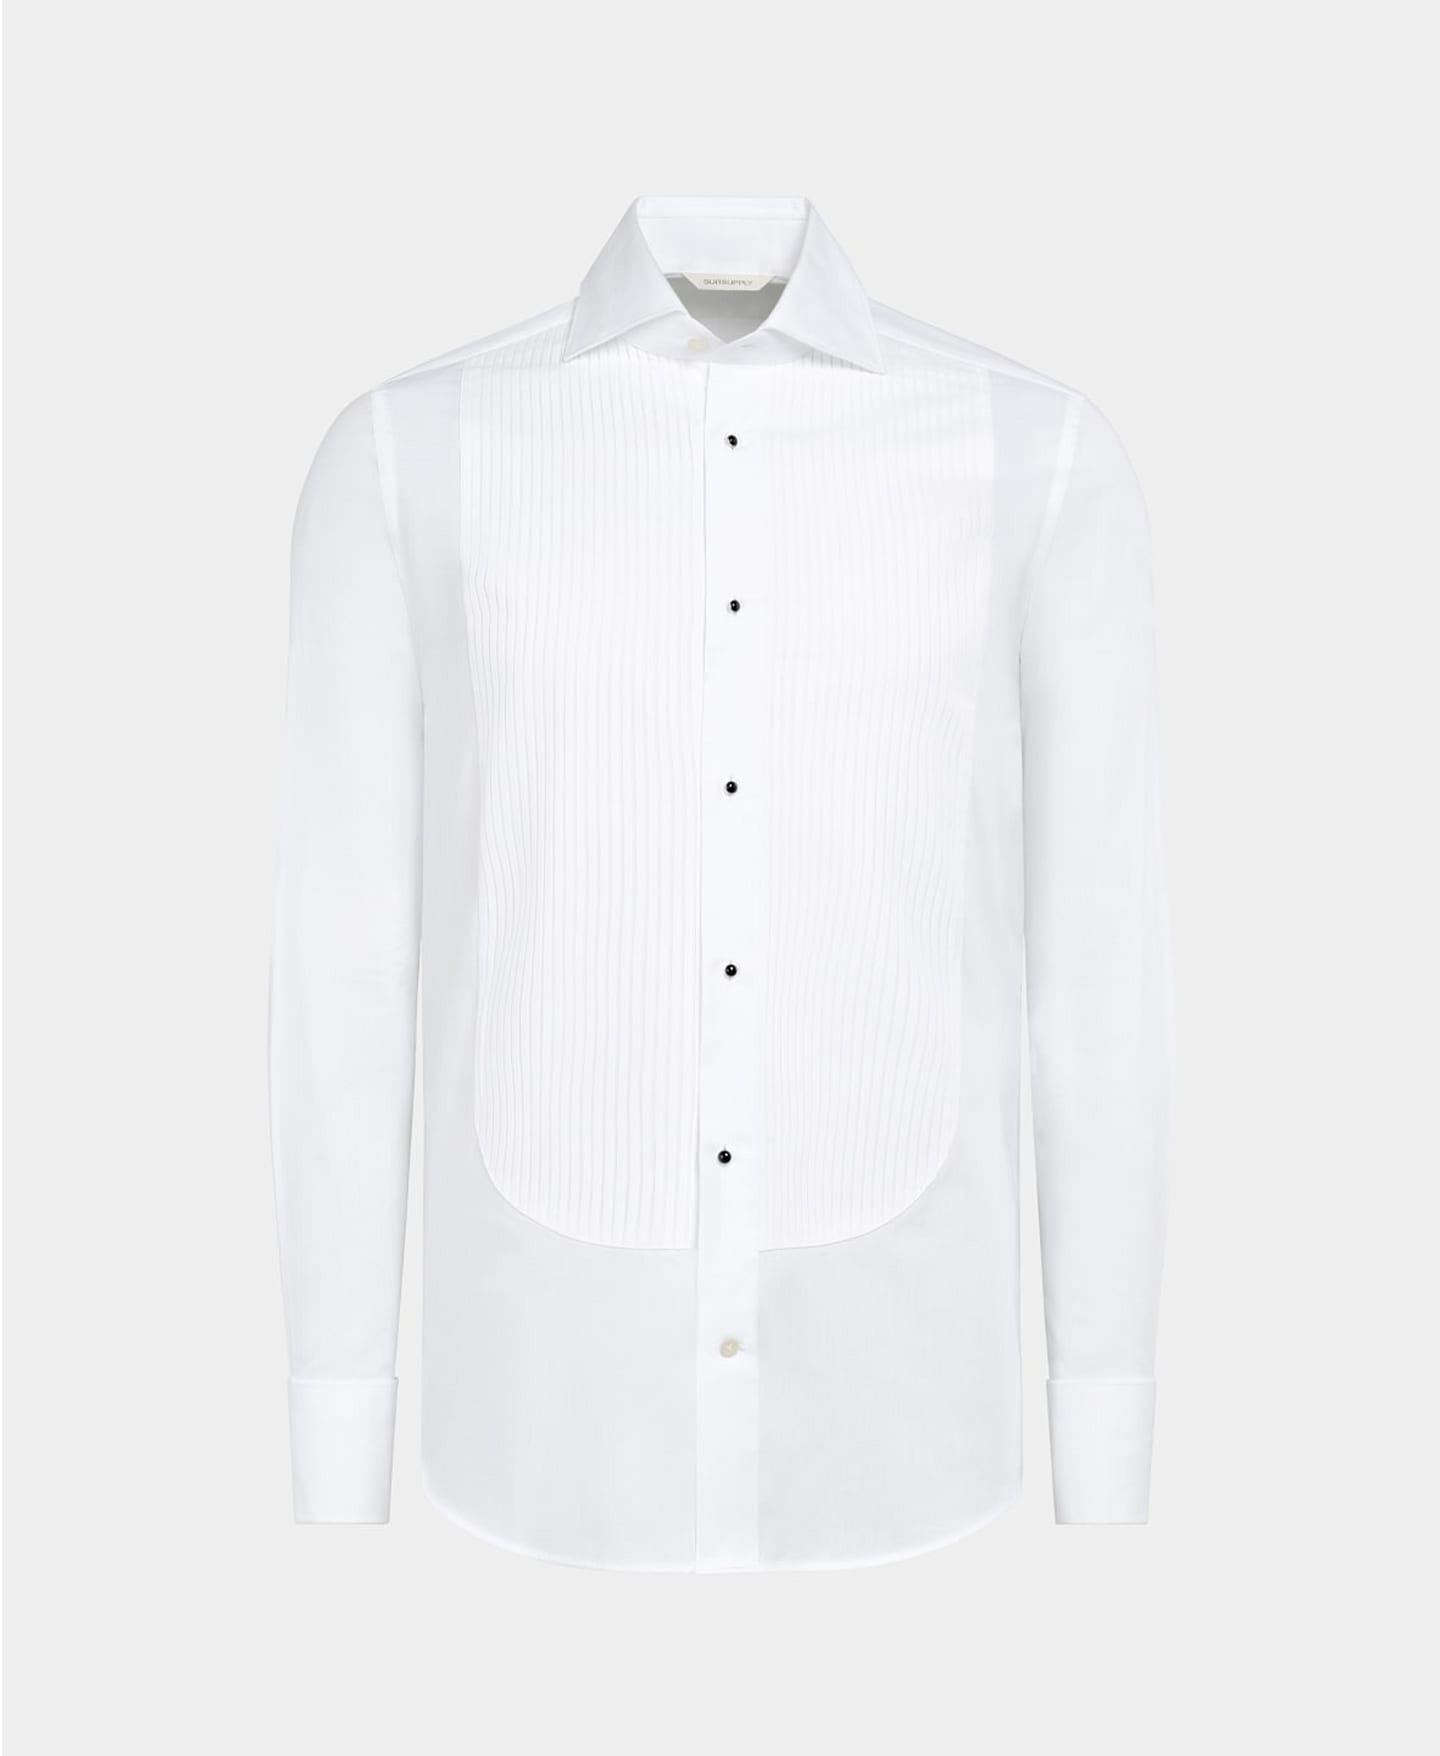 Camisa de esmoquin blanca plisada con pechera y botones de broche de esmalte negro.